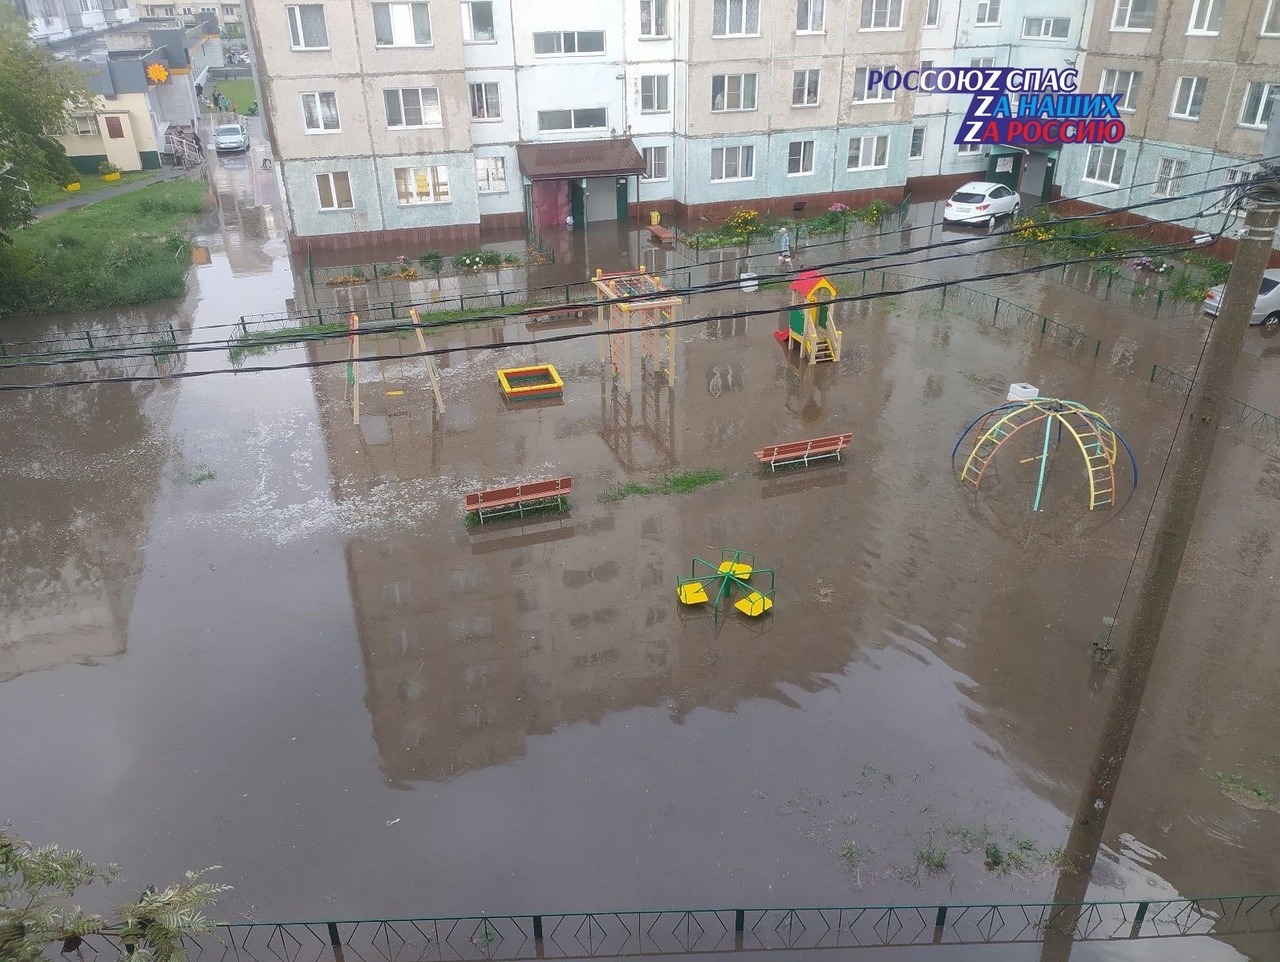 Неблагоприятный прогноз погоды оправдался, силы Барнаульского звена Алтайской территориальной подсистемы РСЧС среагировали оперативно